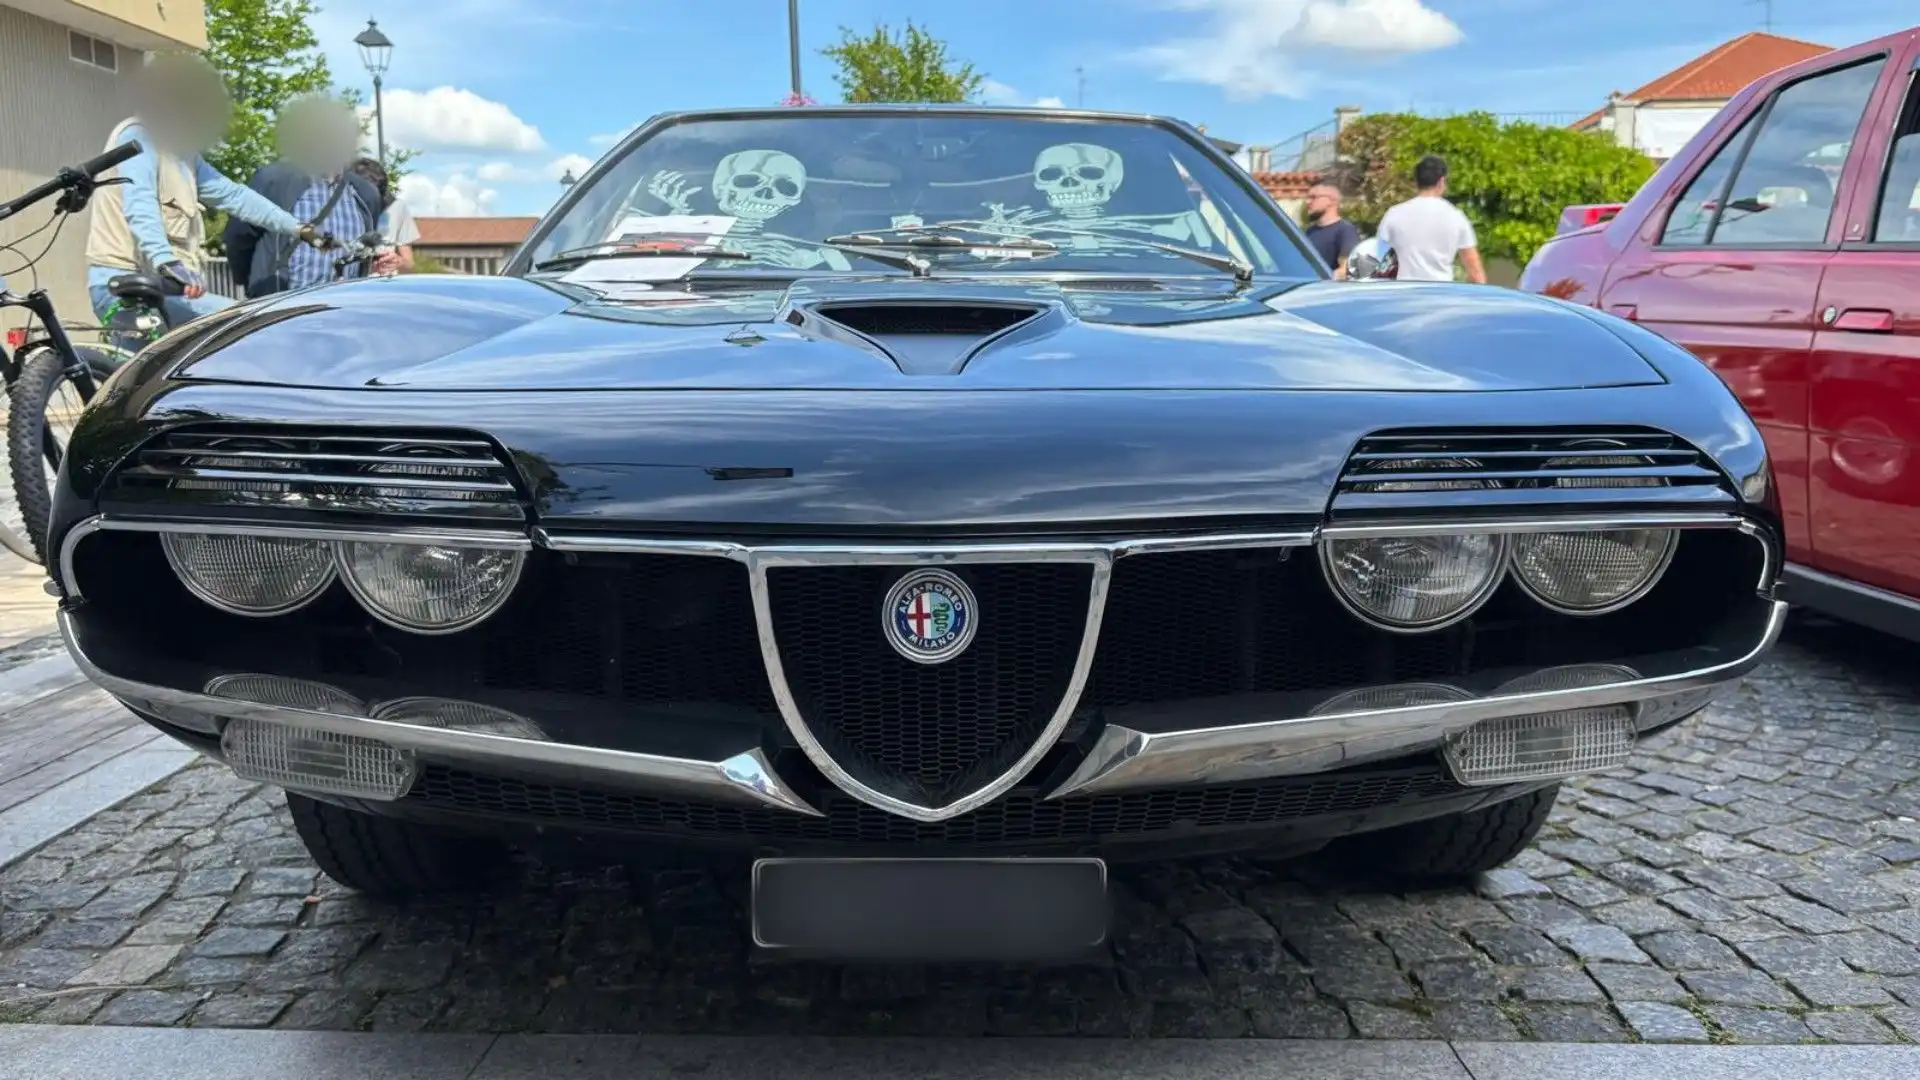 Le foto di una rara e splendida Alfa Romeo Montreal: un'auto impressionante